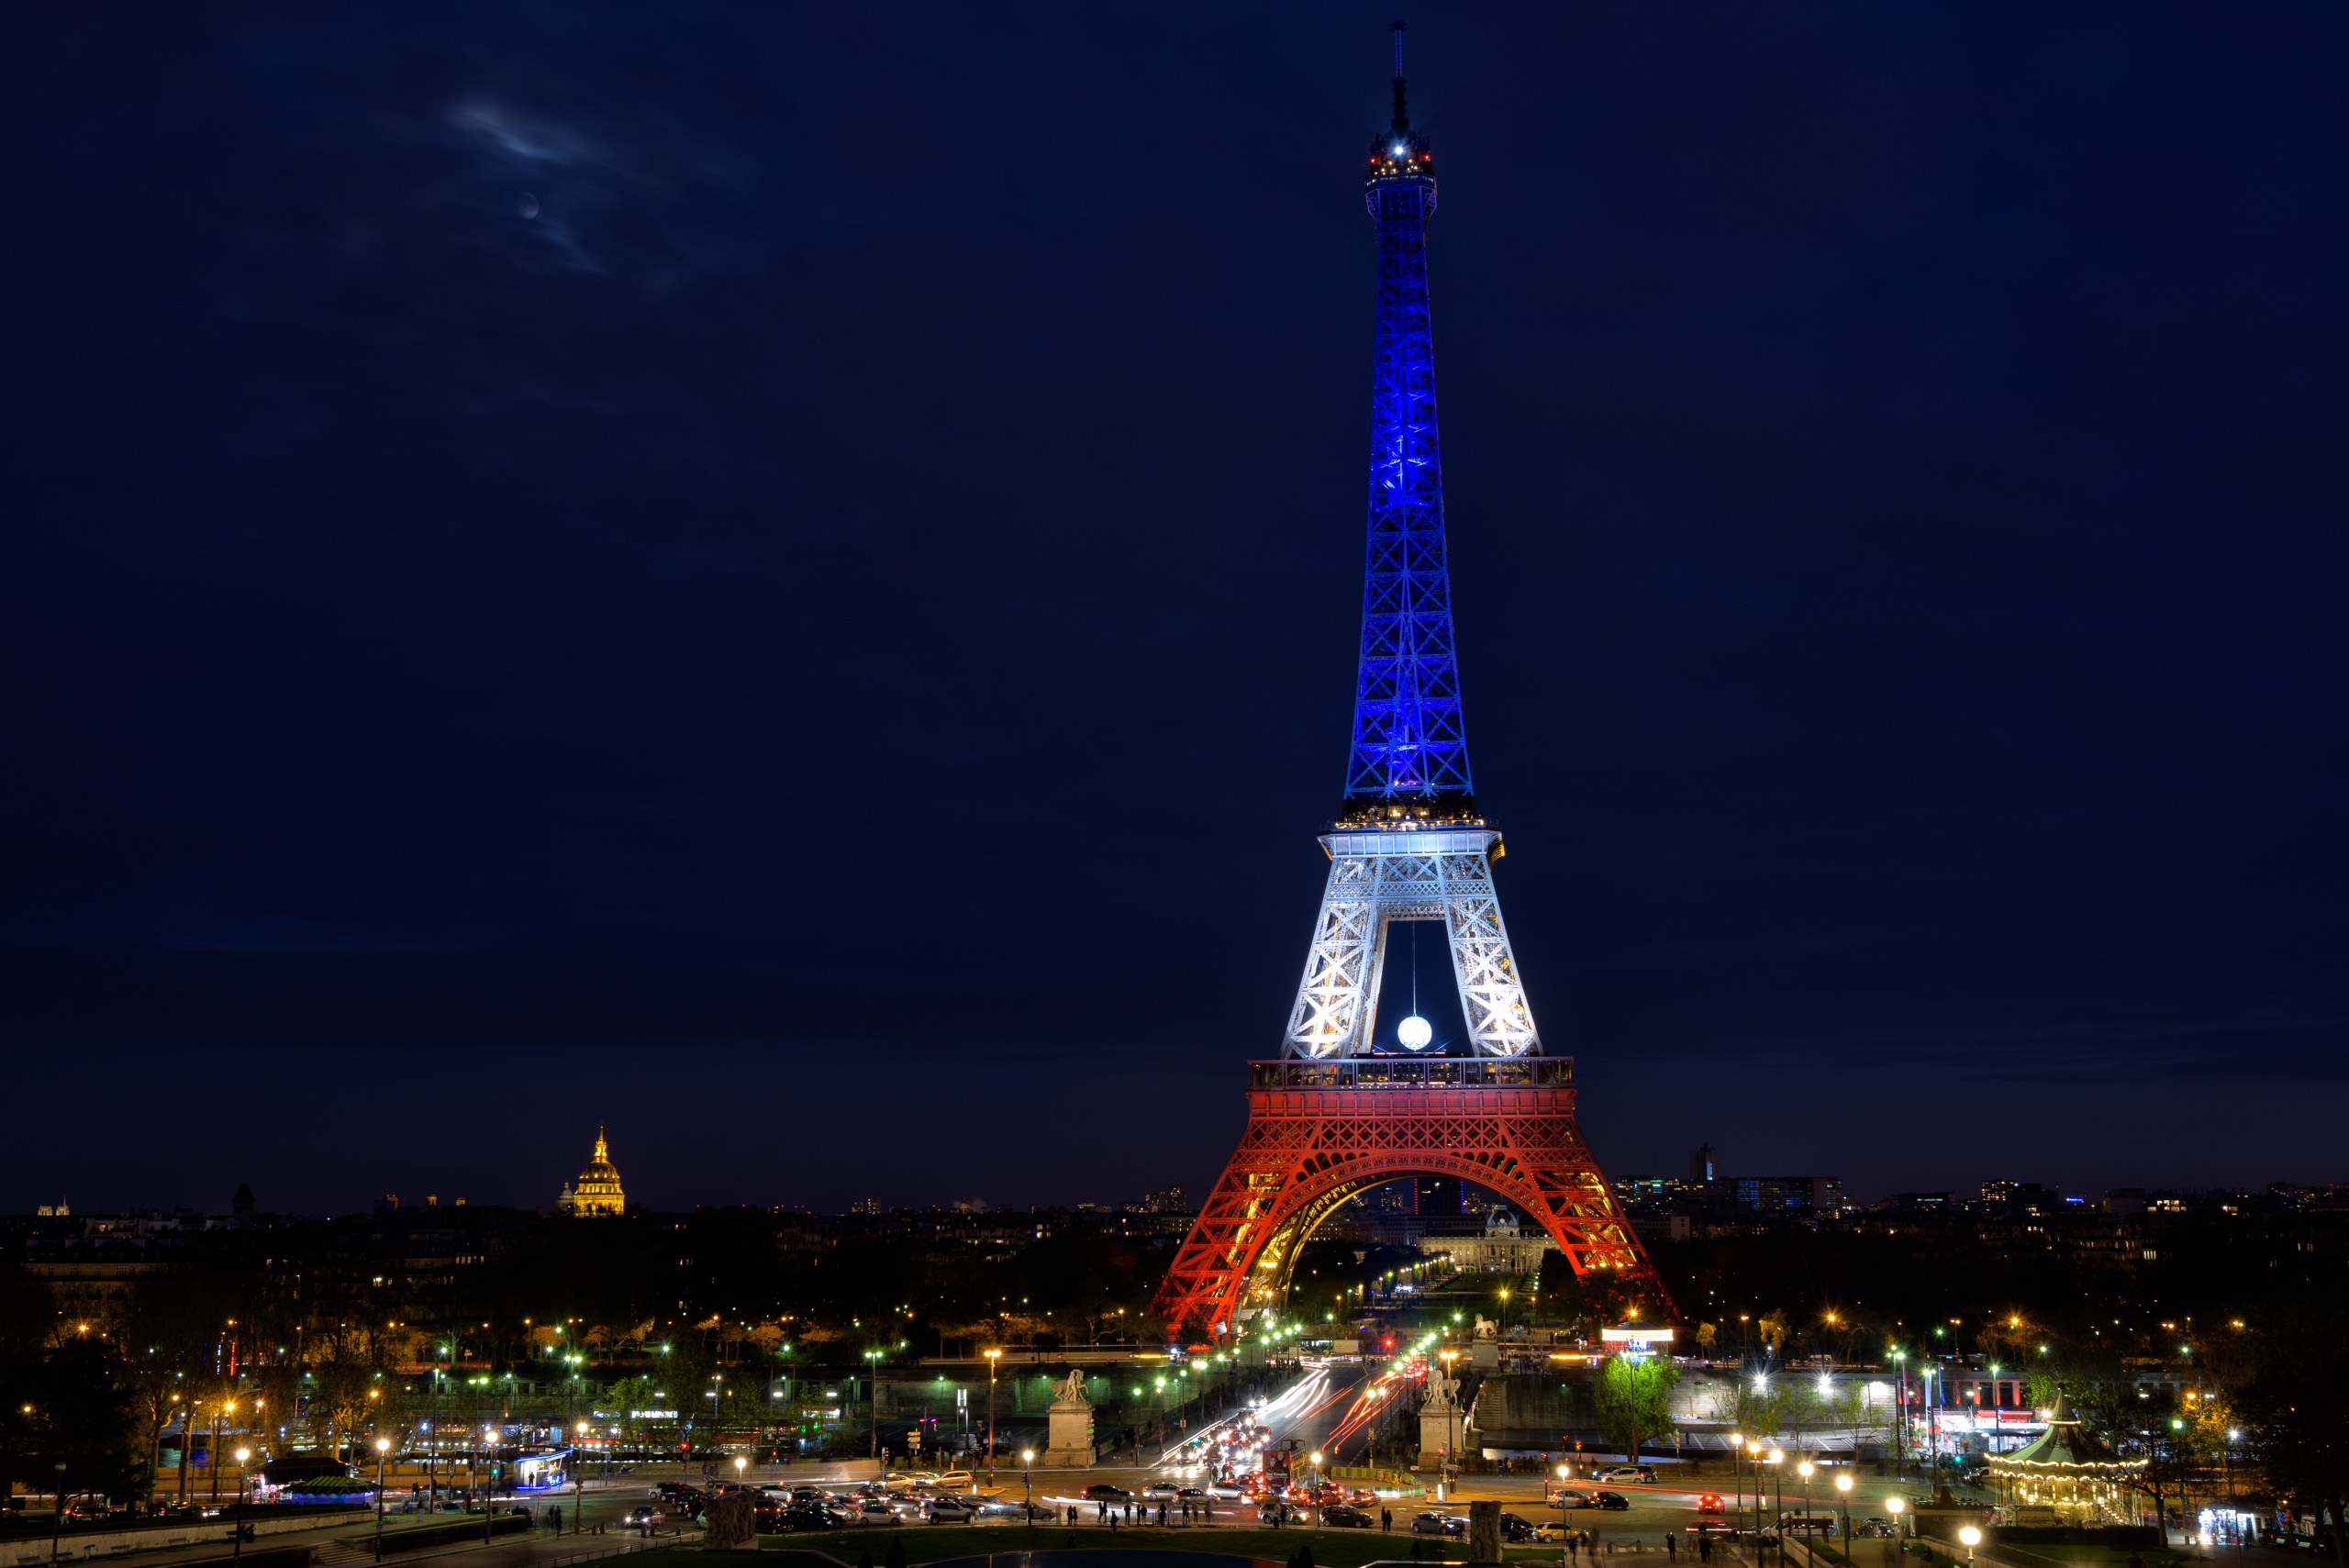 法国巴黎:埃菲尔铁塔,世界最著名的城市地标之一